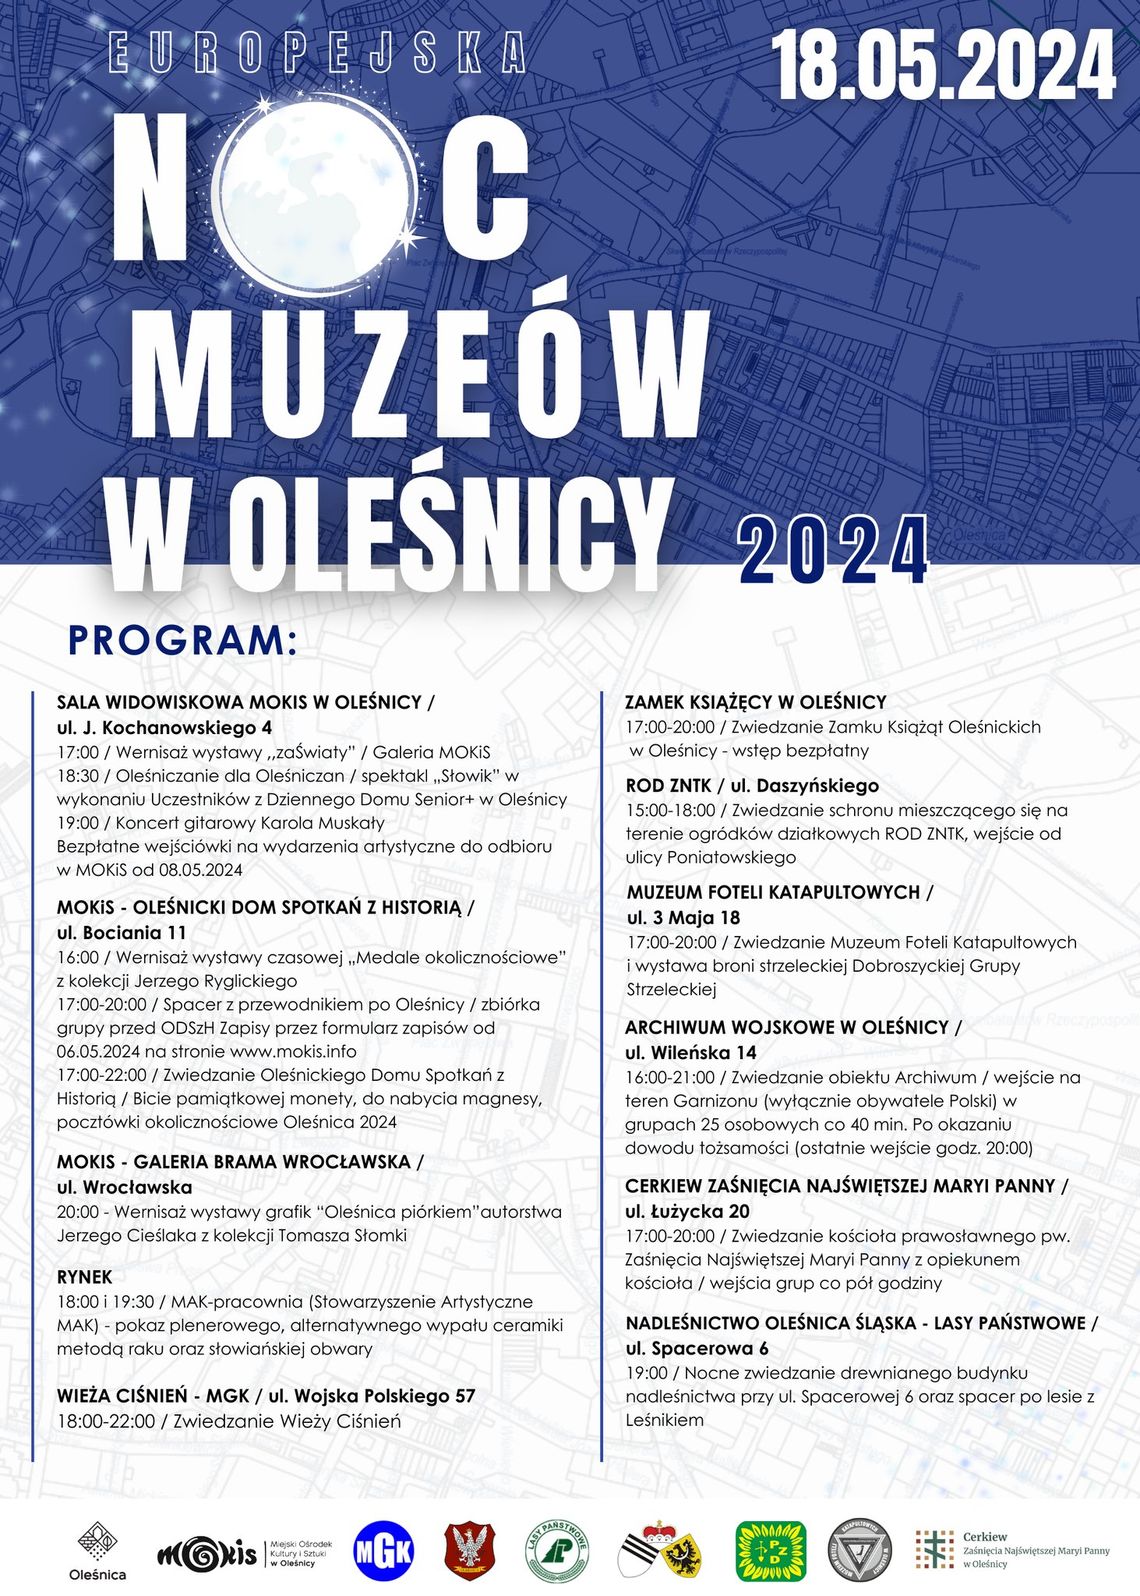 Europejska Noc Muzeów w Oleśnicy